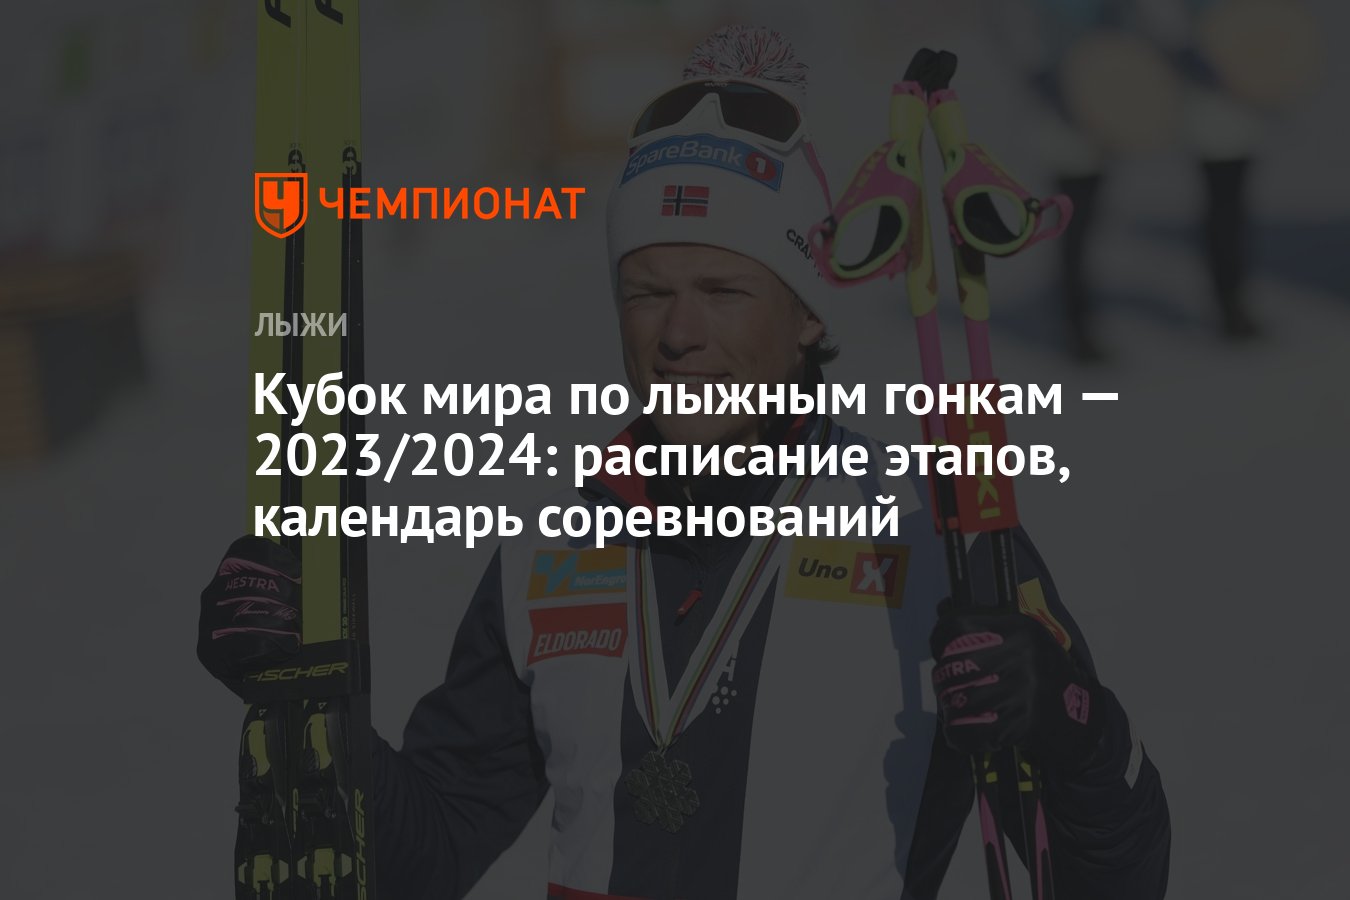 Чр по лыжам 2023 2024 расписание